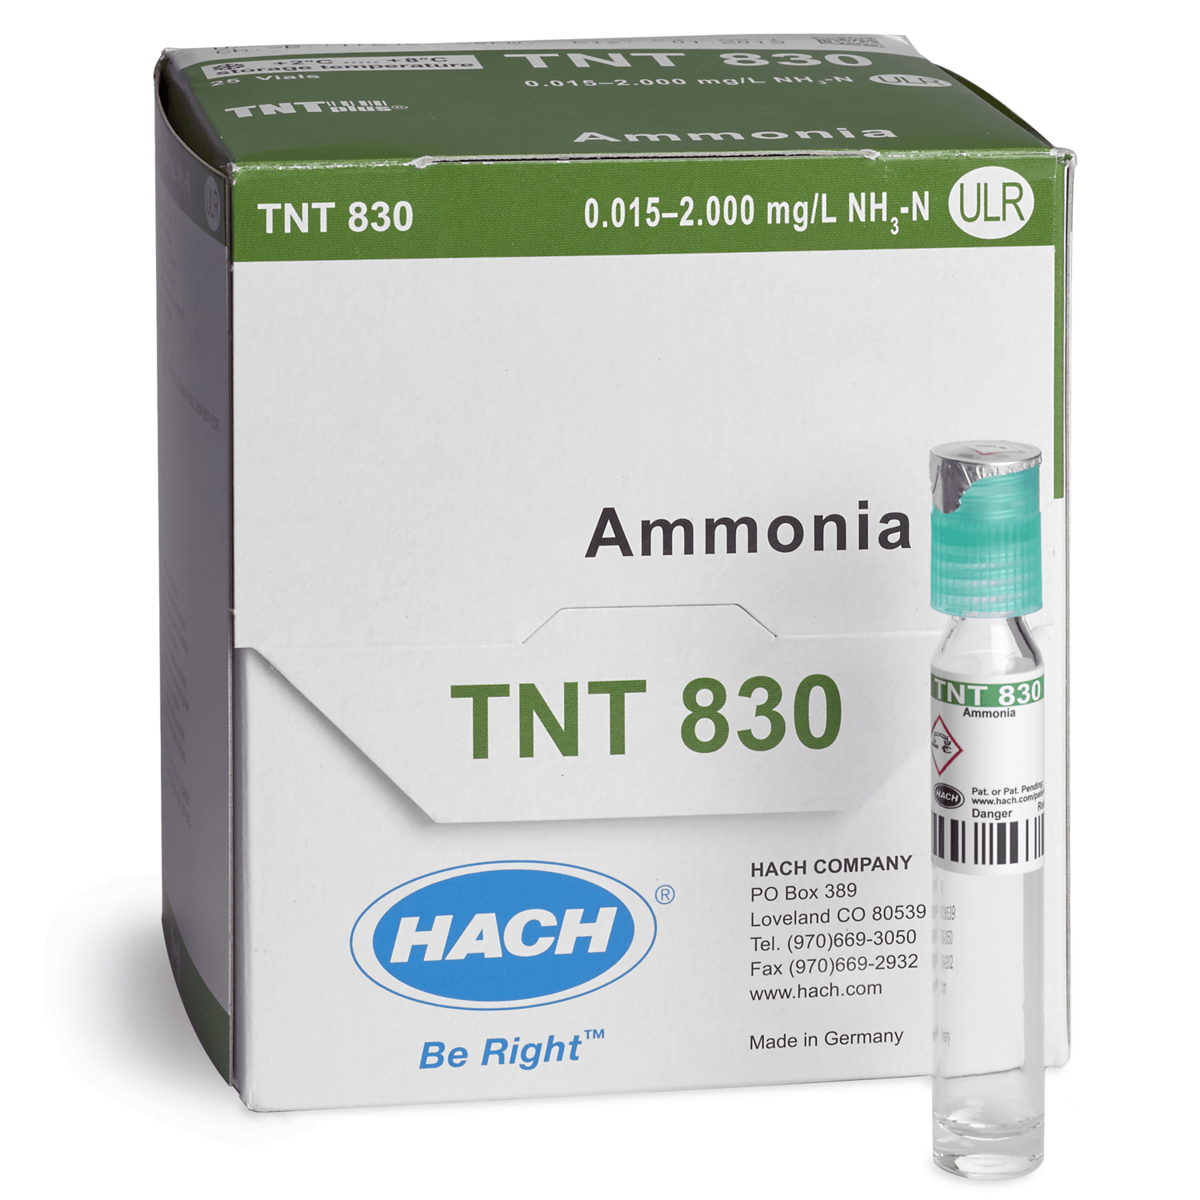 Hach Ammonia TNTplus Vial Test, ULR, 0.015 - 2.00 mg/L NH₃-N , 25 Tests, TNT830